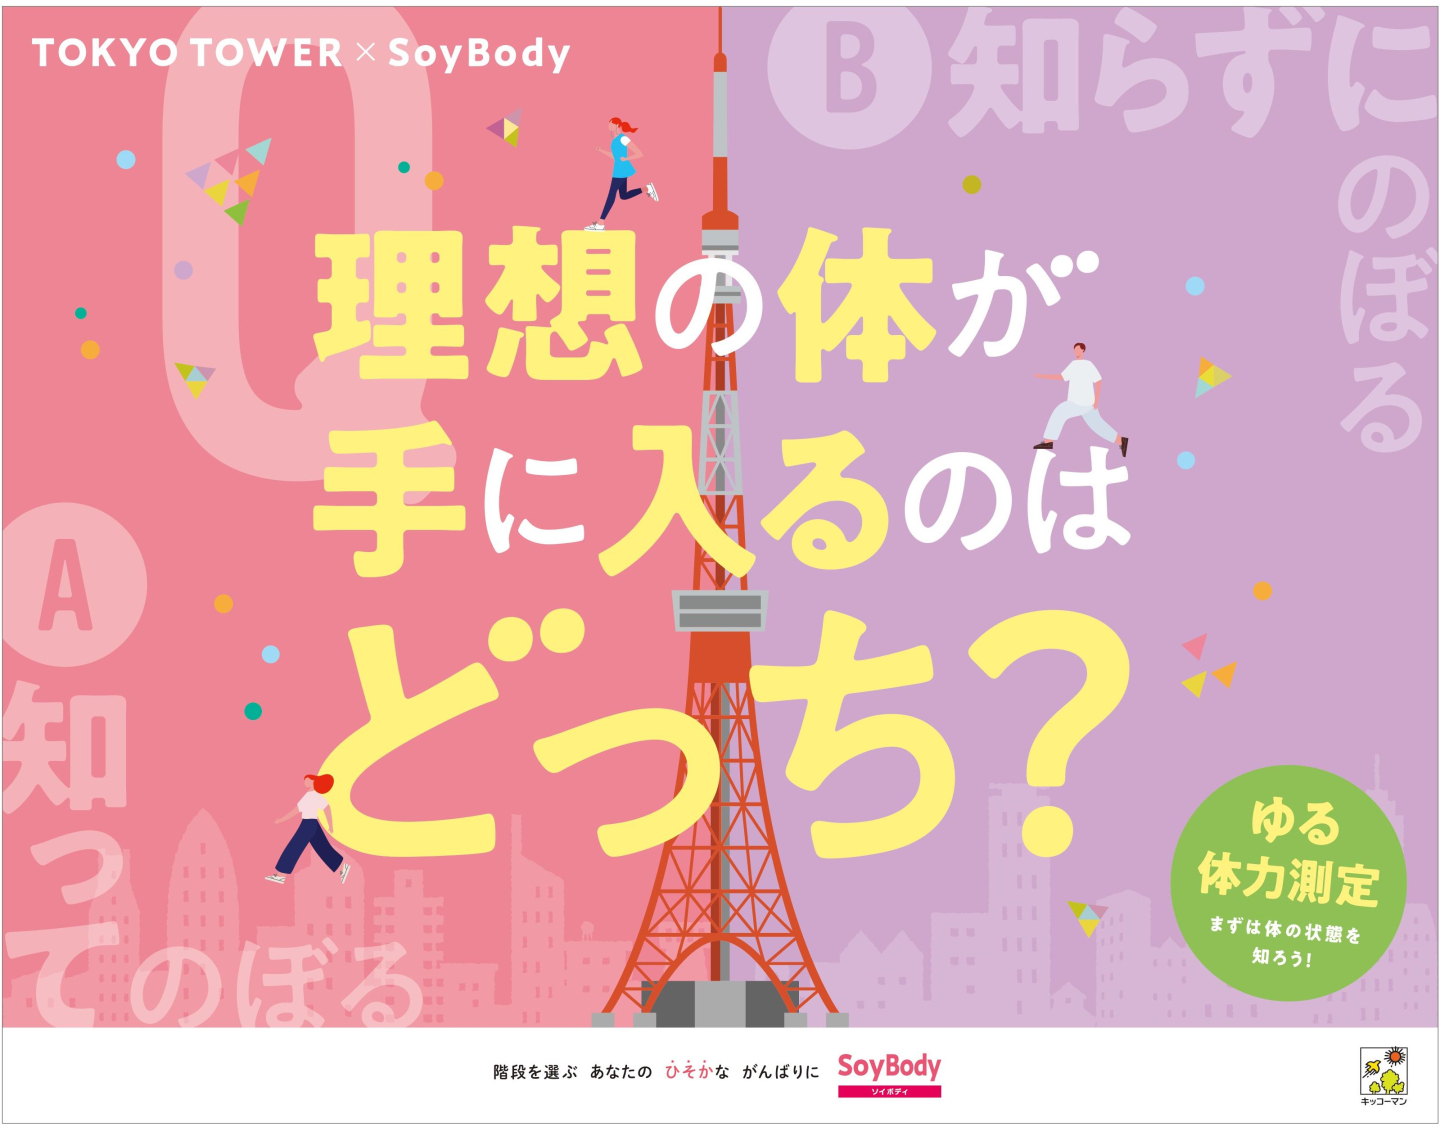 参加者は「キッコーマン SoyBody」シリーズがもらえる！4月12日から東京タワーで体感型サンプリングイベント開催